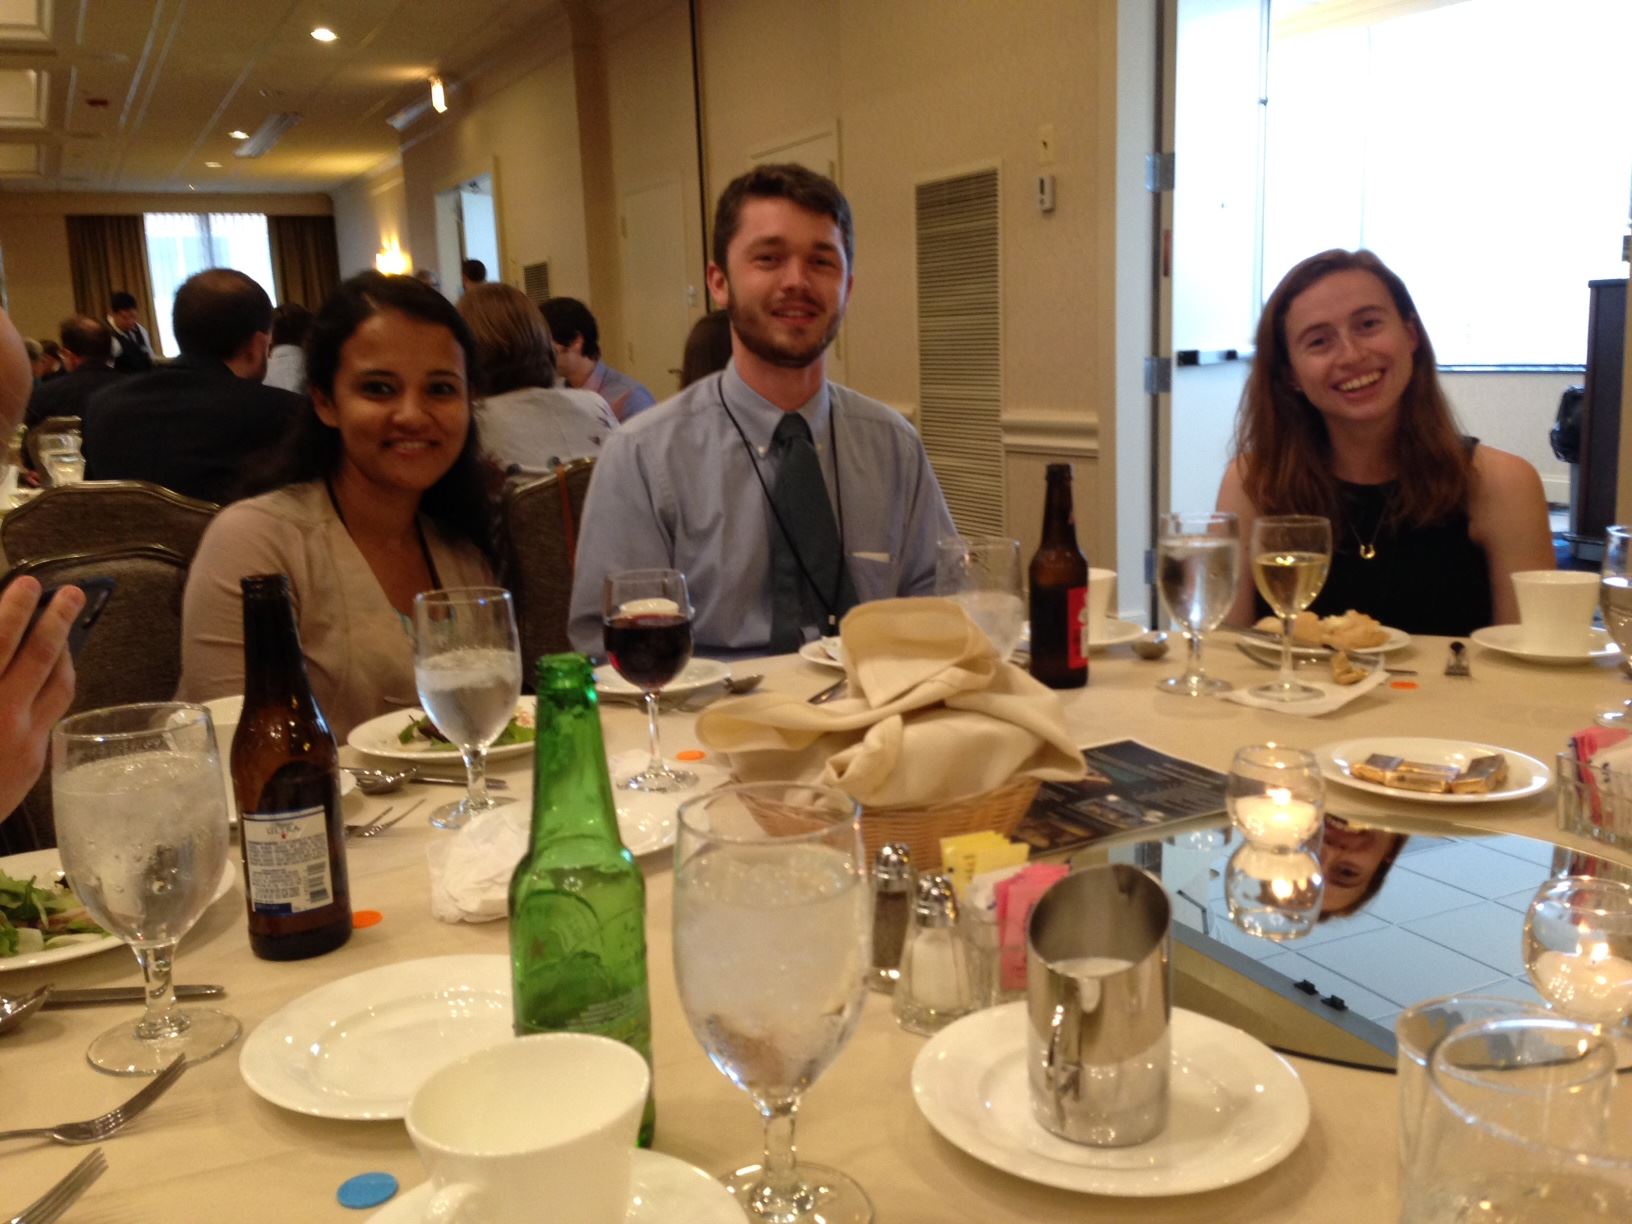 Rucha Kamath, Sam Biggers, and Dana Marks at the banquet